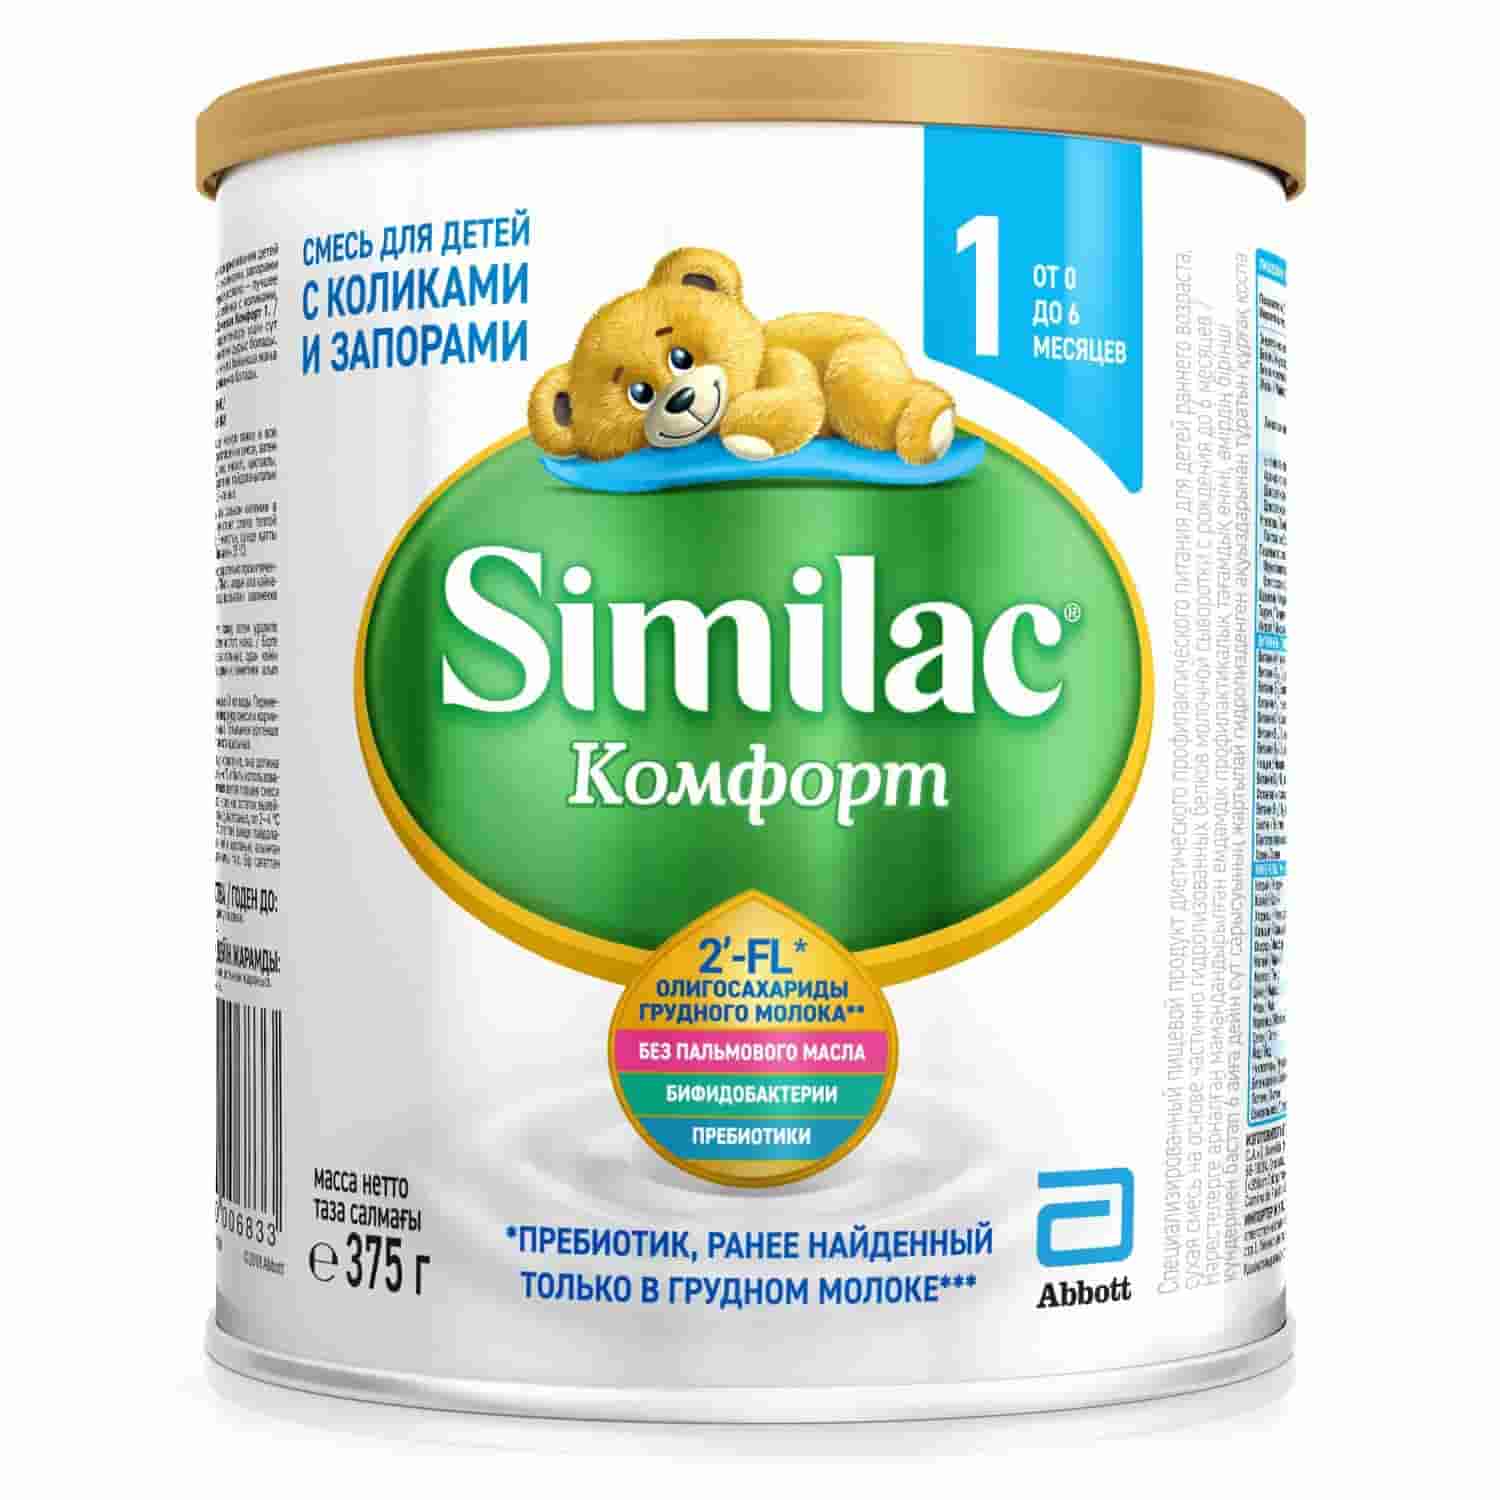 Снижение симптомов колик на 20% уже после 1 дня кормления Similac Комфорт — смесь для детей с коликами и запорами с олигосахаридами грудного молока 2’-FL2 — уникальным ингредиентом, который ранее был обнаружен3 только в грудном молоке. Новый олигосахарид грудного молока 2’-FL — еще один компонент подтвержденного исследованиями комплекса Similac для комфортного пищеварения и укрепления иммунитета. Similac Комфорт содержит олигосахариды 2’-FL, которые стимулируют рост полезных бактерий в кишечнике, защищают организм ребенка от инфекций и способствуют укреплению иммунитета. Частично гидролизованный сывороточный белок легко переваривается и способствует уменьшению колик и запоров. Бифидобактерии B.lactis — эффективный и хорошо изученный пробиотик, помогающий развитию здоровой микрофлоры кишечника и поддержанию здоровья пищеварительной системы. Пребиотики FOS являются пищей для полезной микрофлоры кишечника, способствуют мягкому стулу. Нуклеотиды — строительный материал для ДНК всех клеток организма. Отсутствие пальмового масла способствует уменьшению запоров и более высокому усвоению кальция.